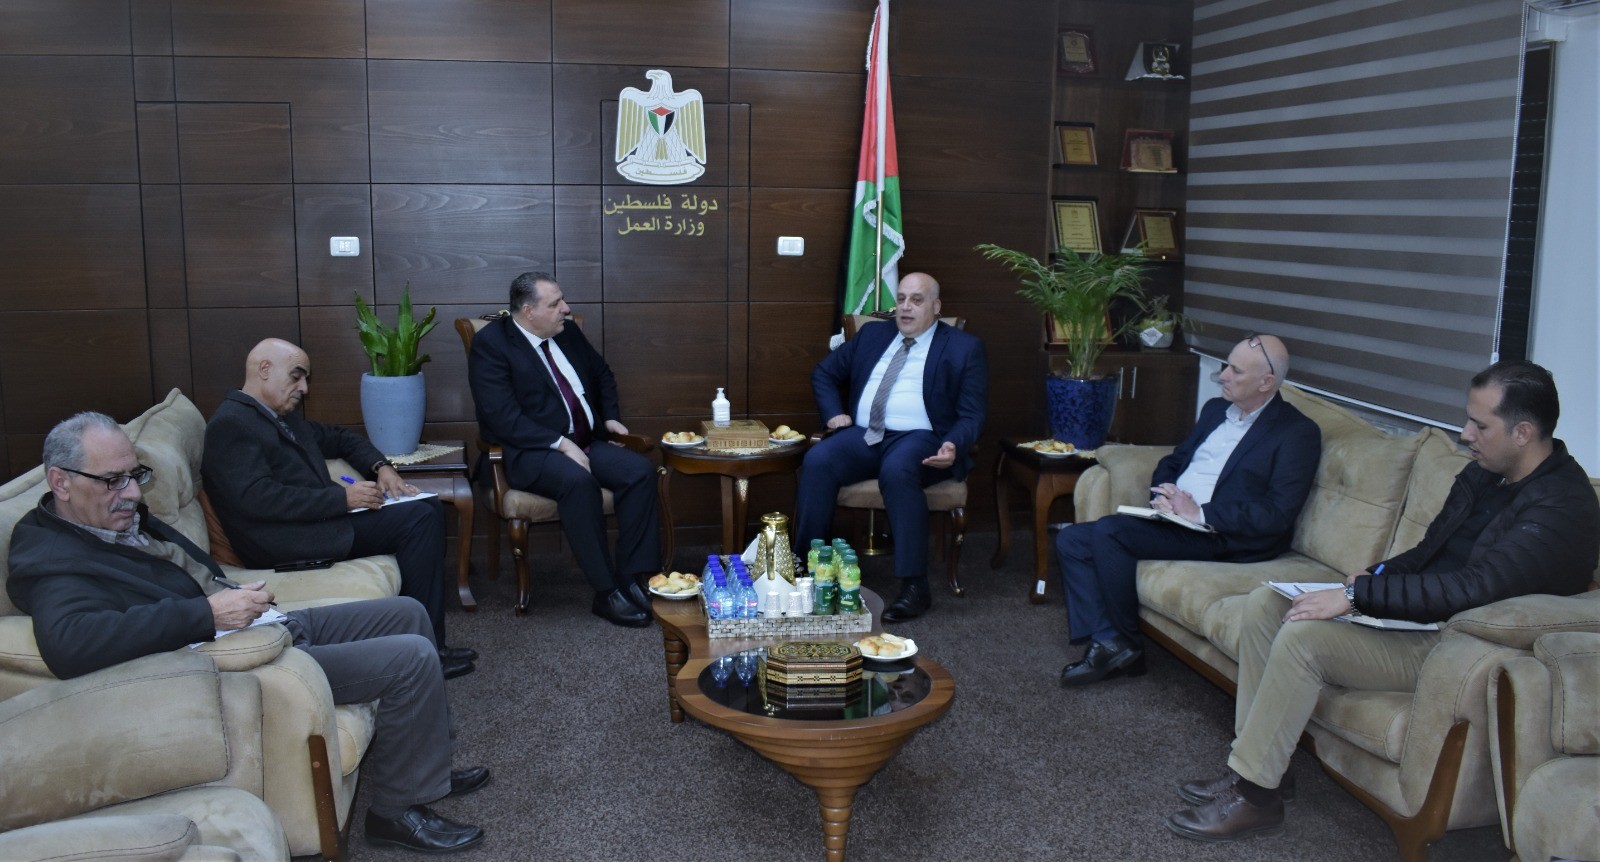 وزير العمل يبحث مع السفير الأردني سبل إنجاح اجتماع دعم التشغيل  